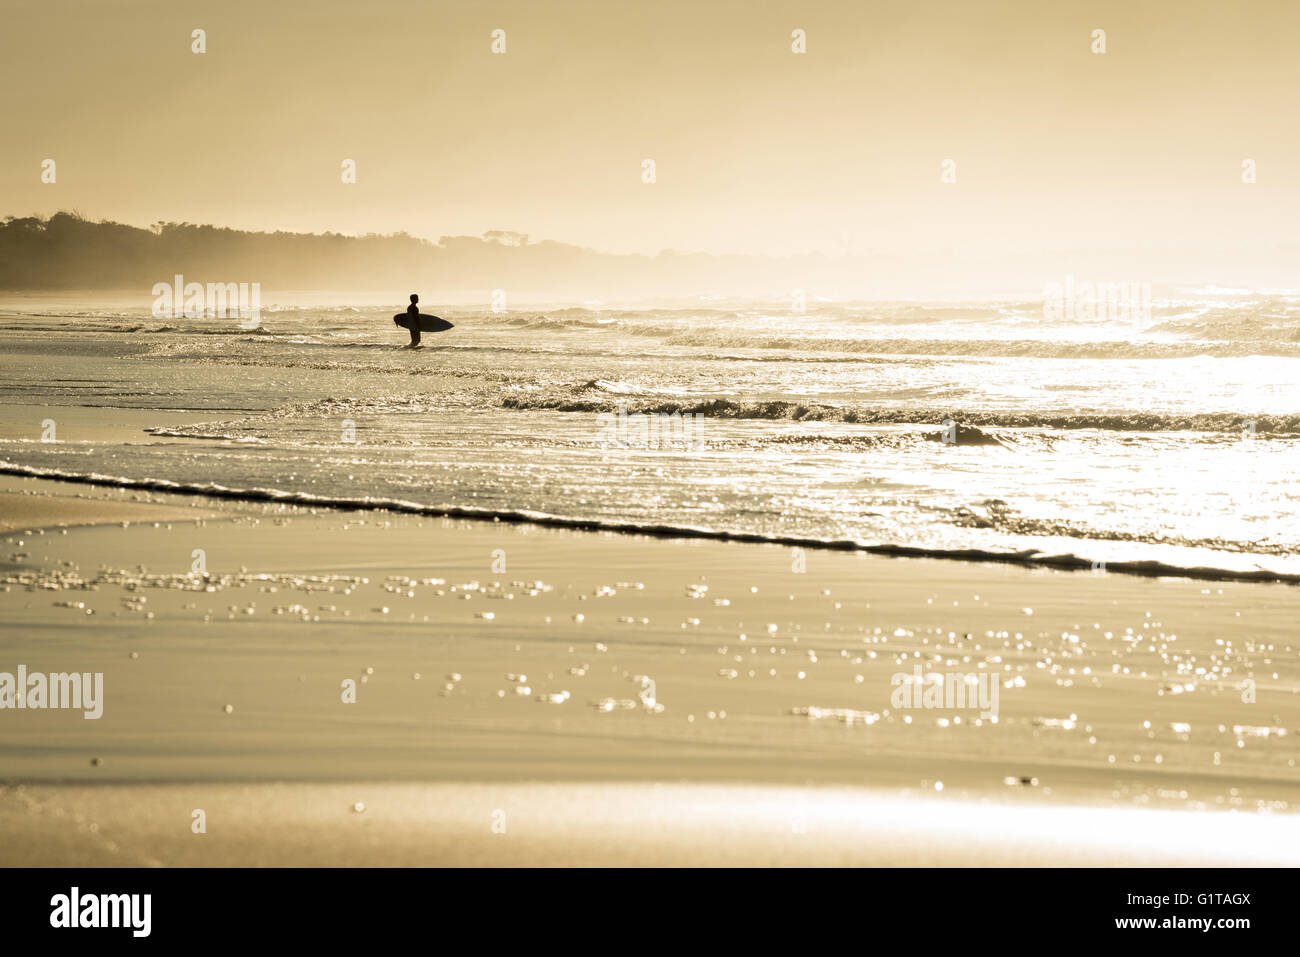 Mann-Silhouette mit Surfbrett im Strandküste, Sommer surfen Konzept. Gesunde Lebensweise Urlaub Poster oder Surf-Grußkarte. Stockfoto